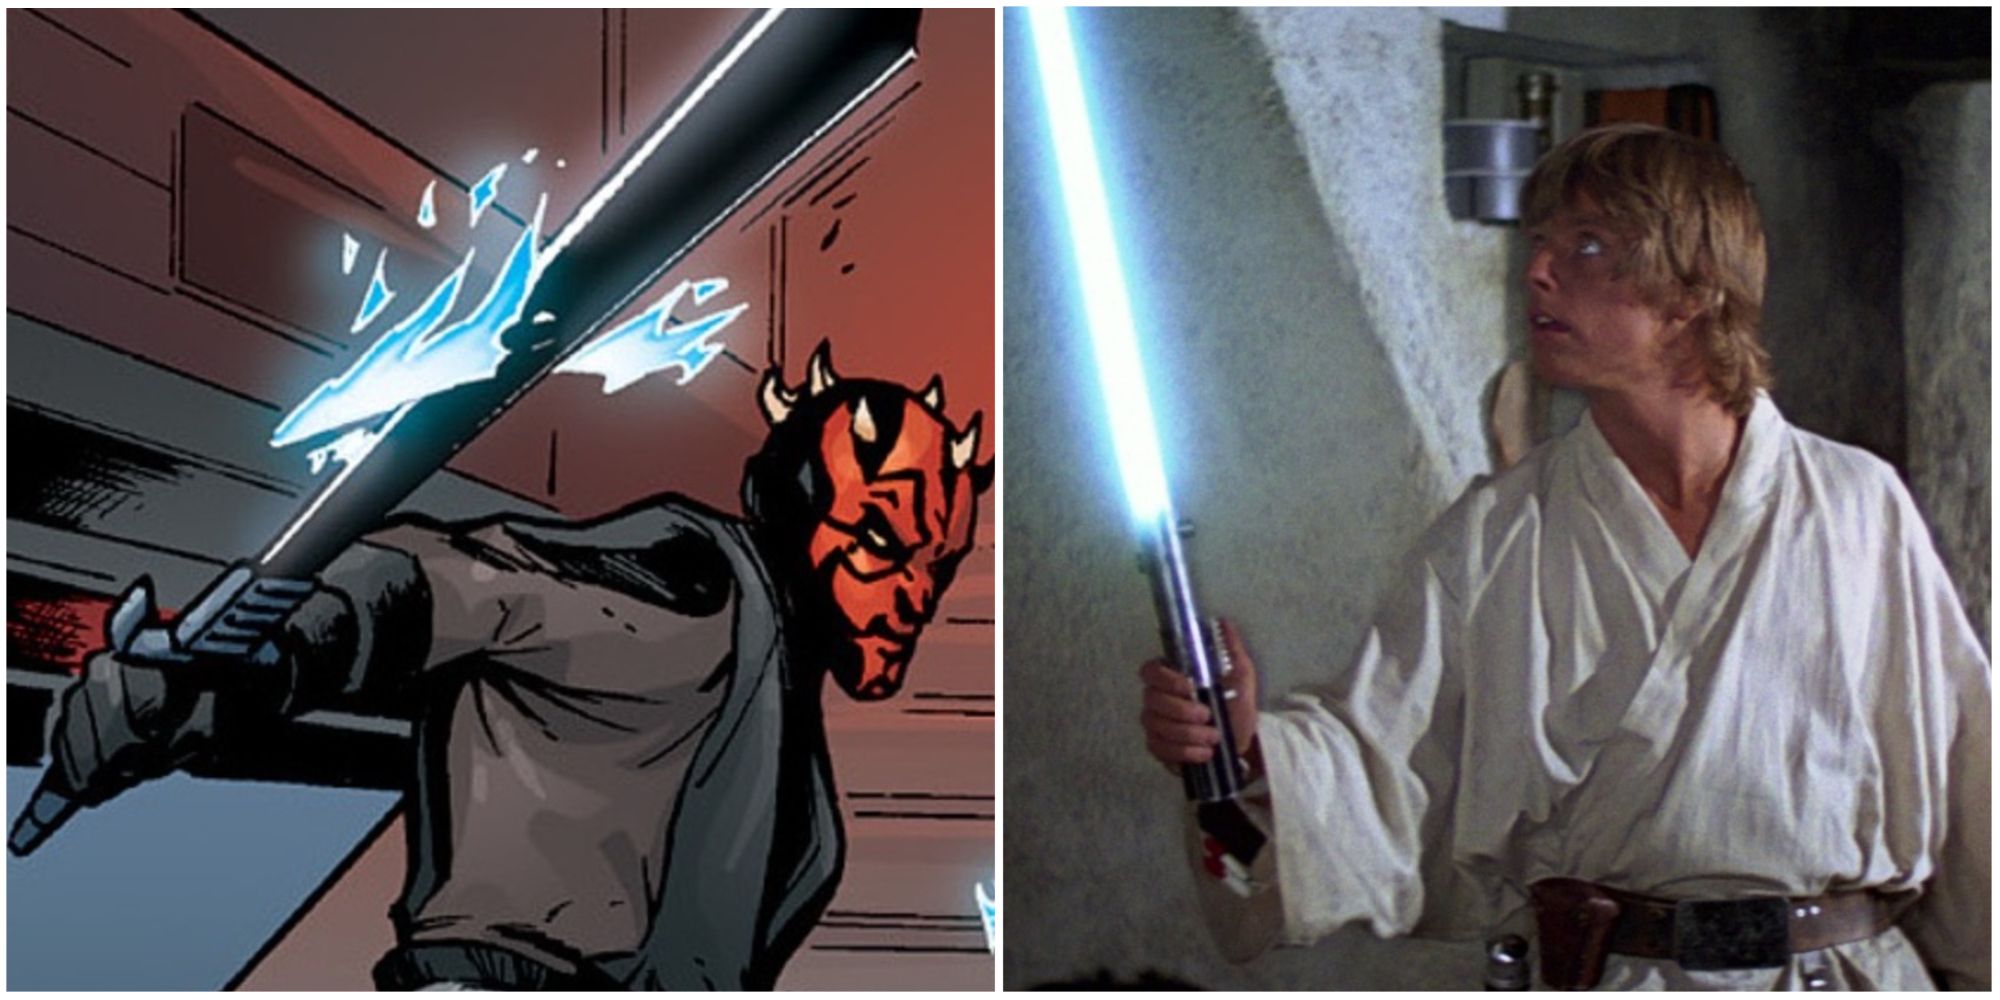 Darth Maul and Luke Skywalker wielding lightsabers in Star Wars franchise